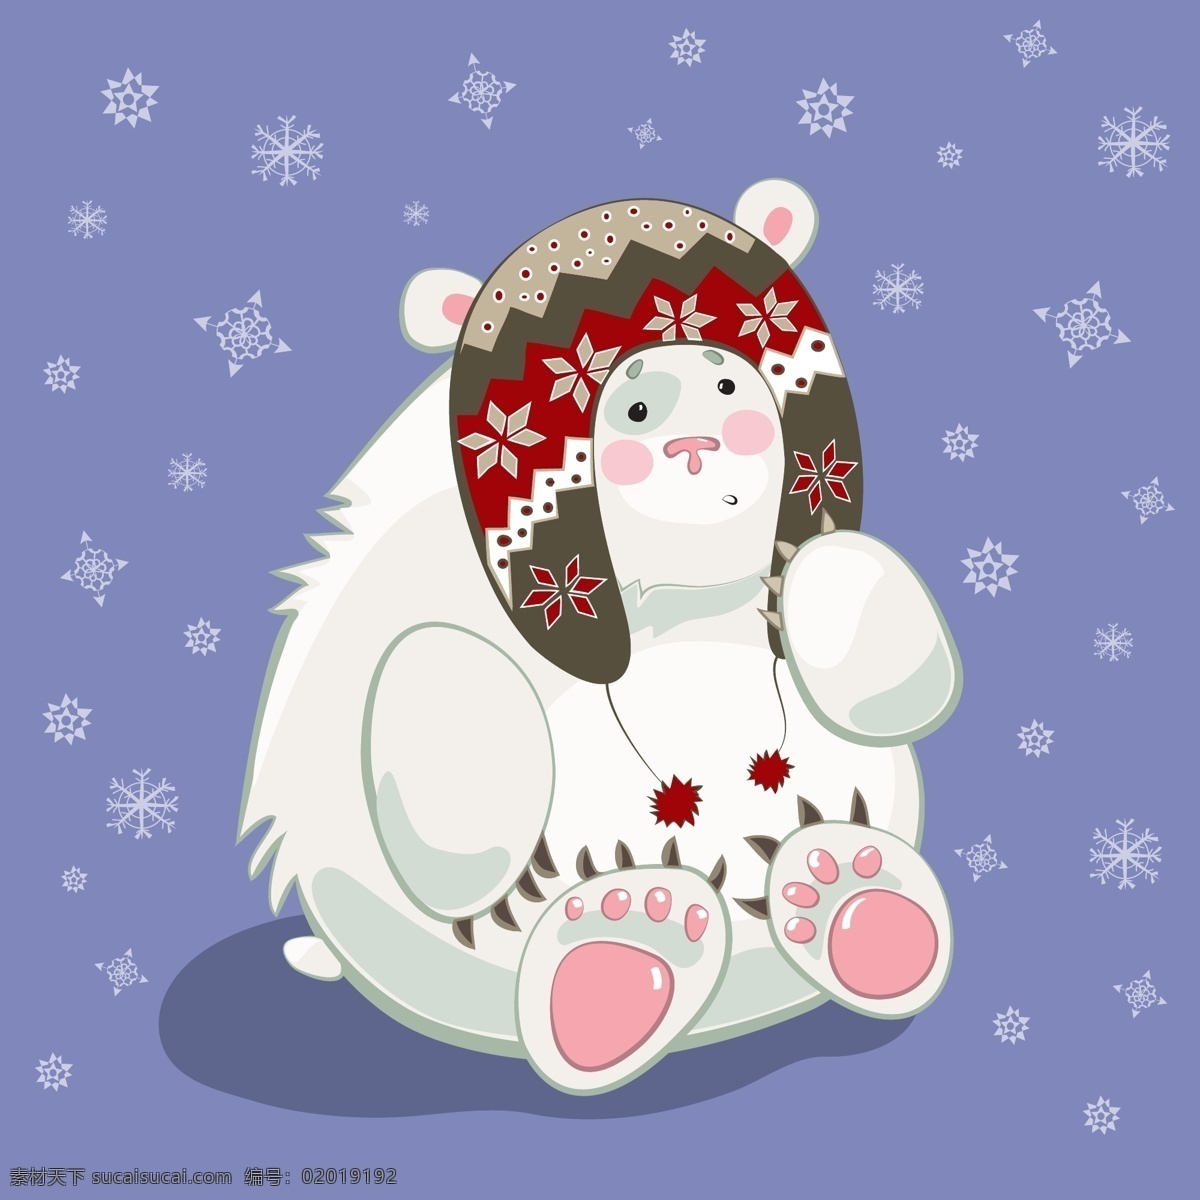 趣味 卡通 可爱 北极熊 插画 动物 围巾